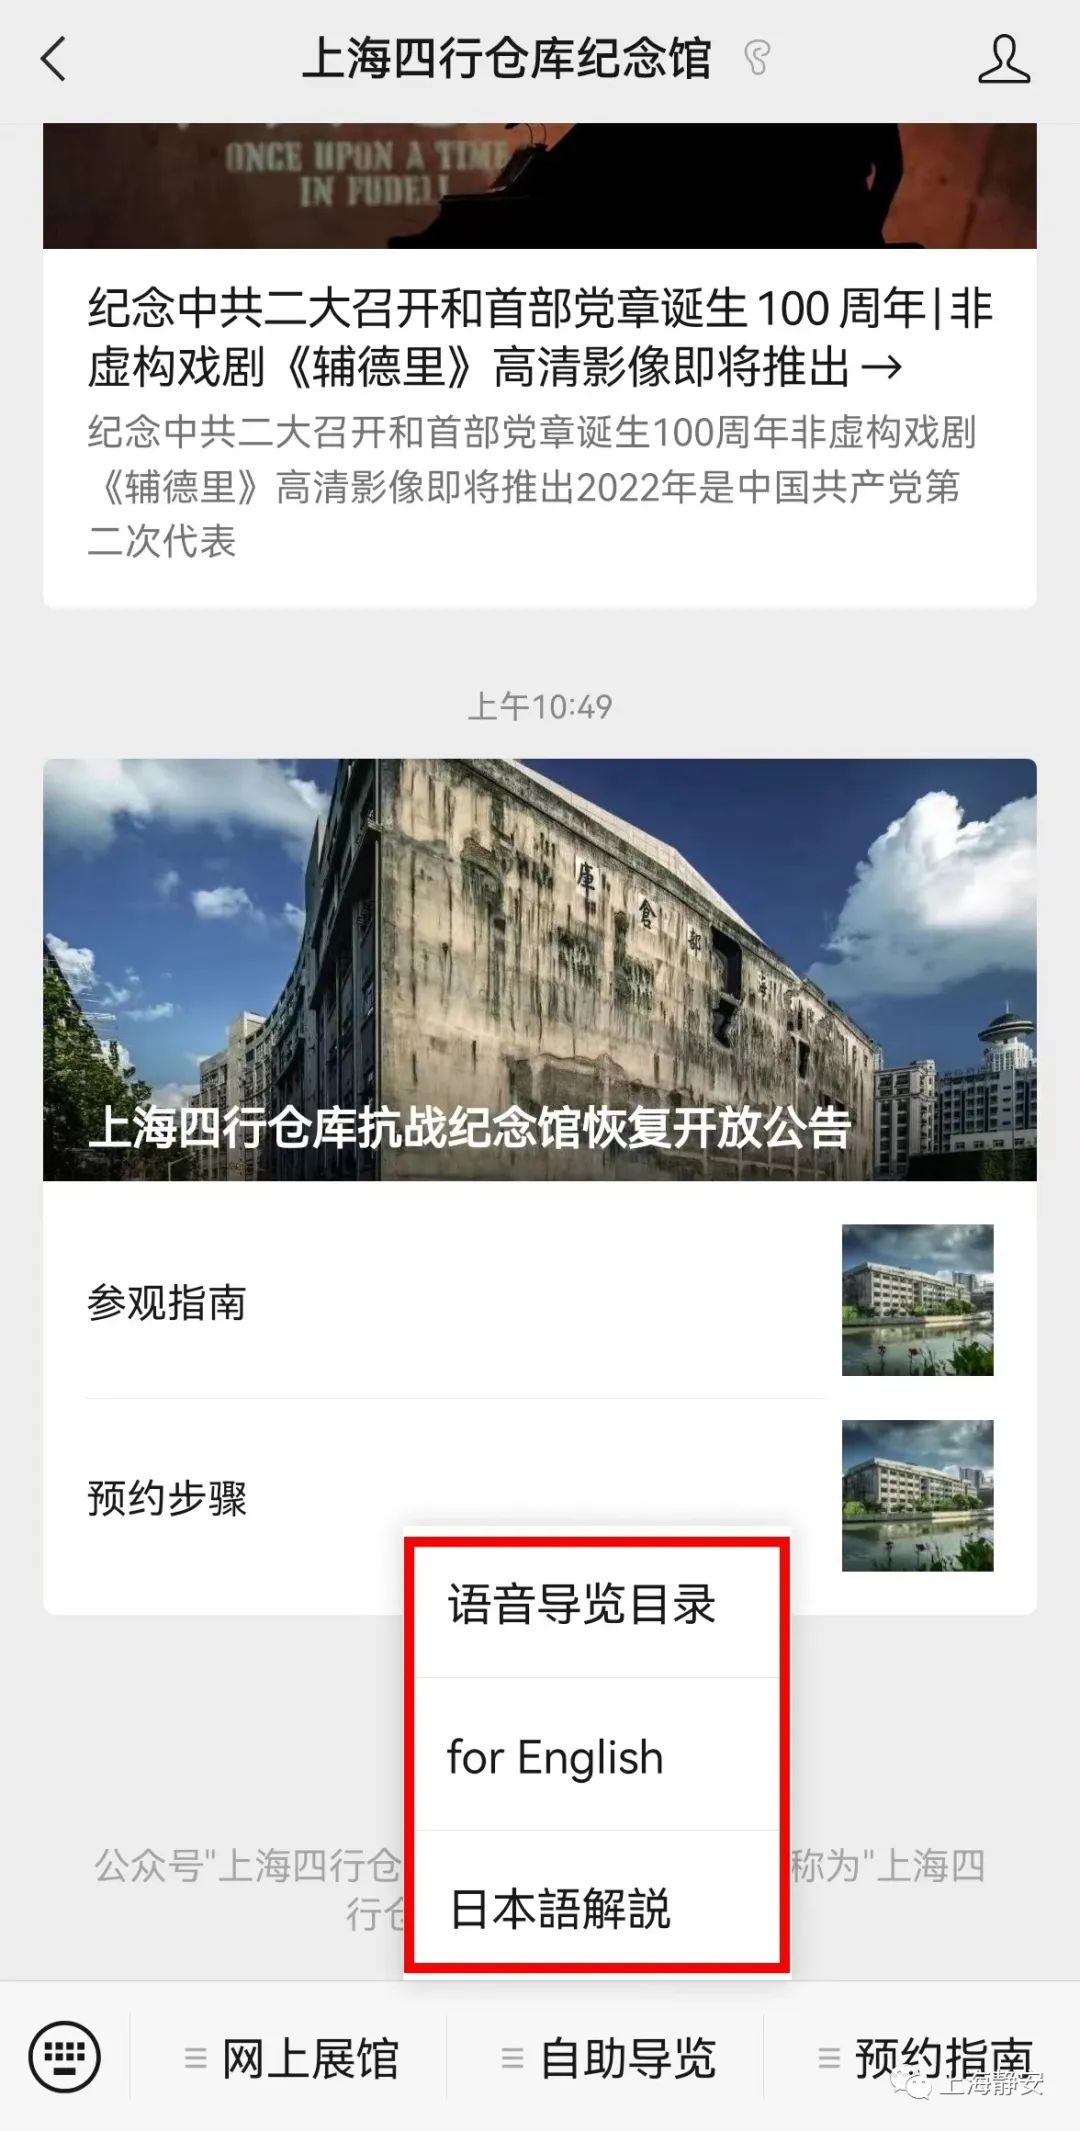 上海四行仓库抗战纪念馆将于7月30日恢复开放插图1